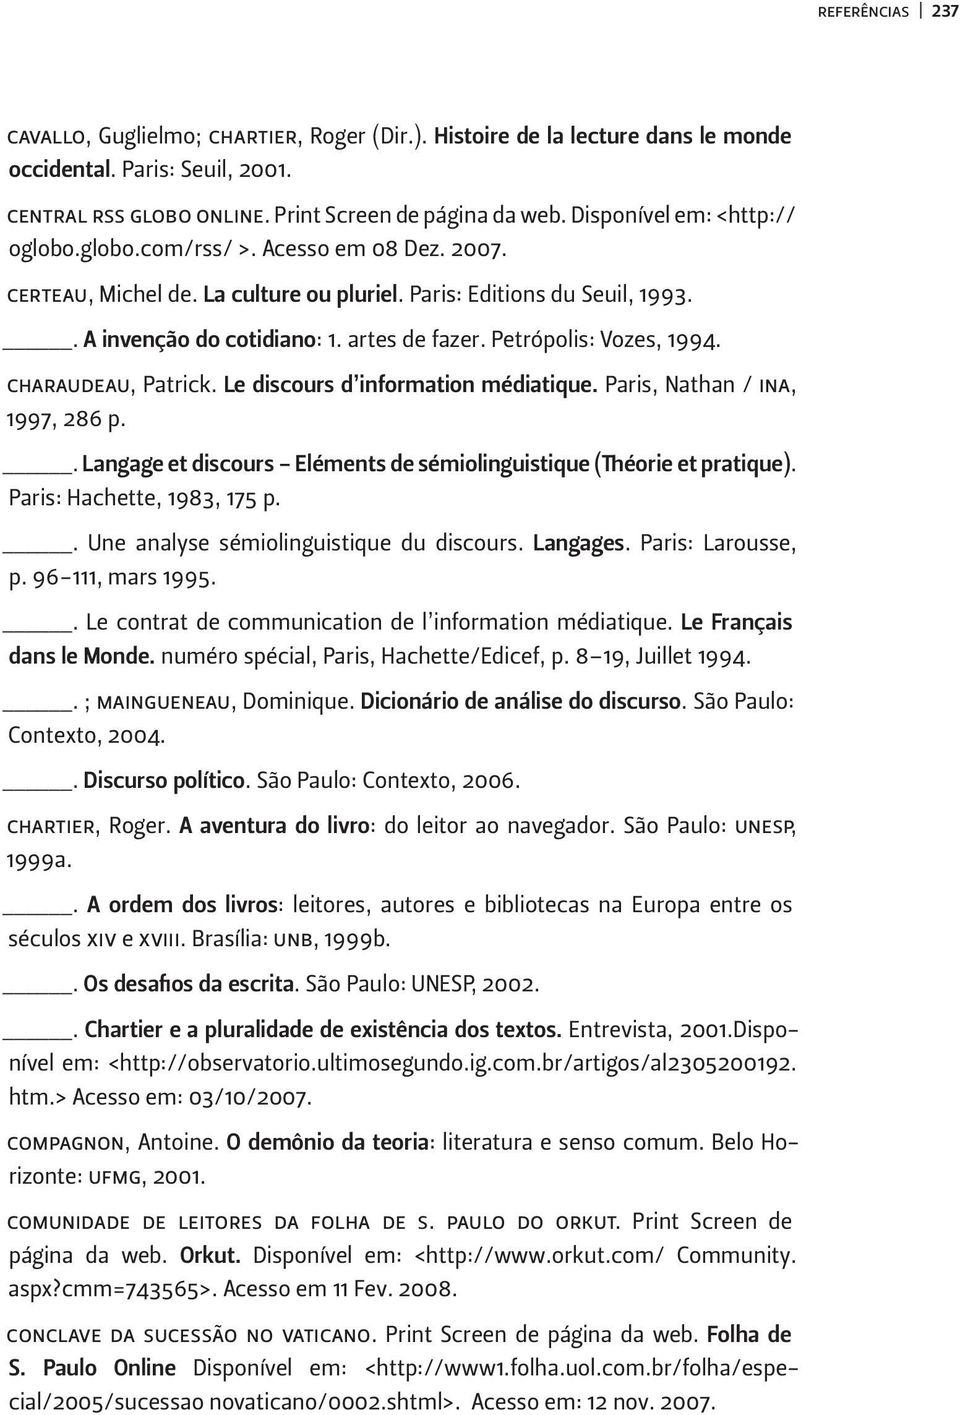 Petrópolis: Vozes, 1994. charaudeau, Patrick. Le discours d information médiatique. Paris, Nathan / ina, 1997, 286 p.. Langage et discours - Eléments de sémiolinguistique (Théorie et pratique).